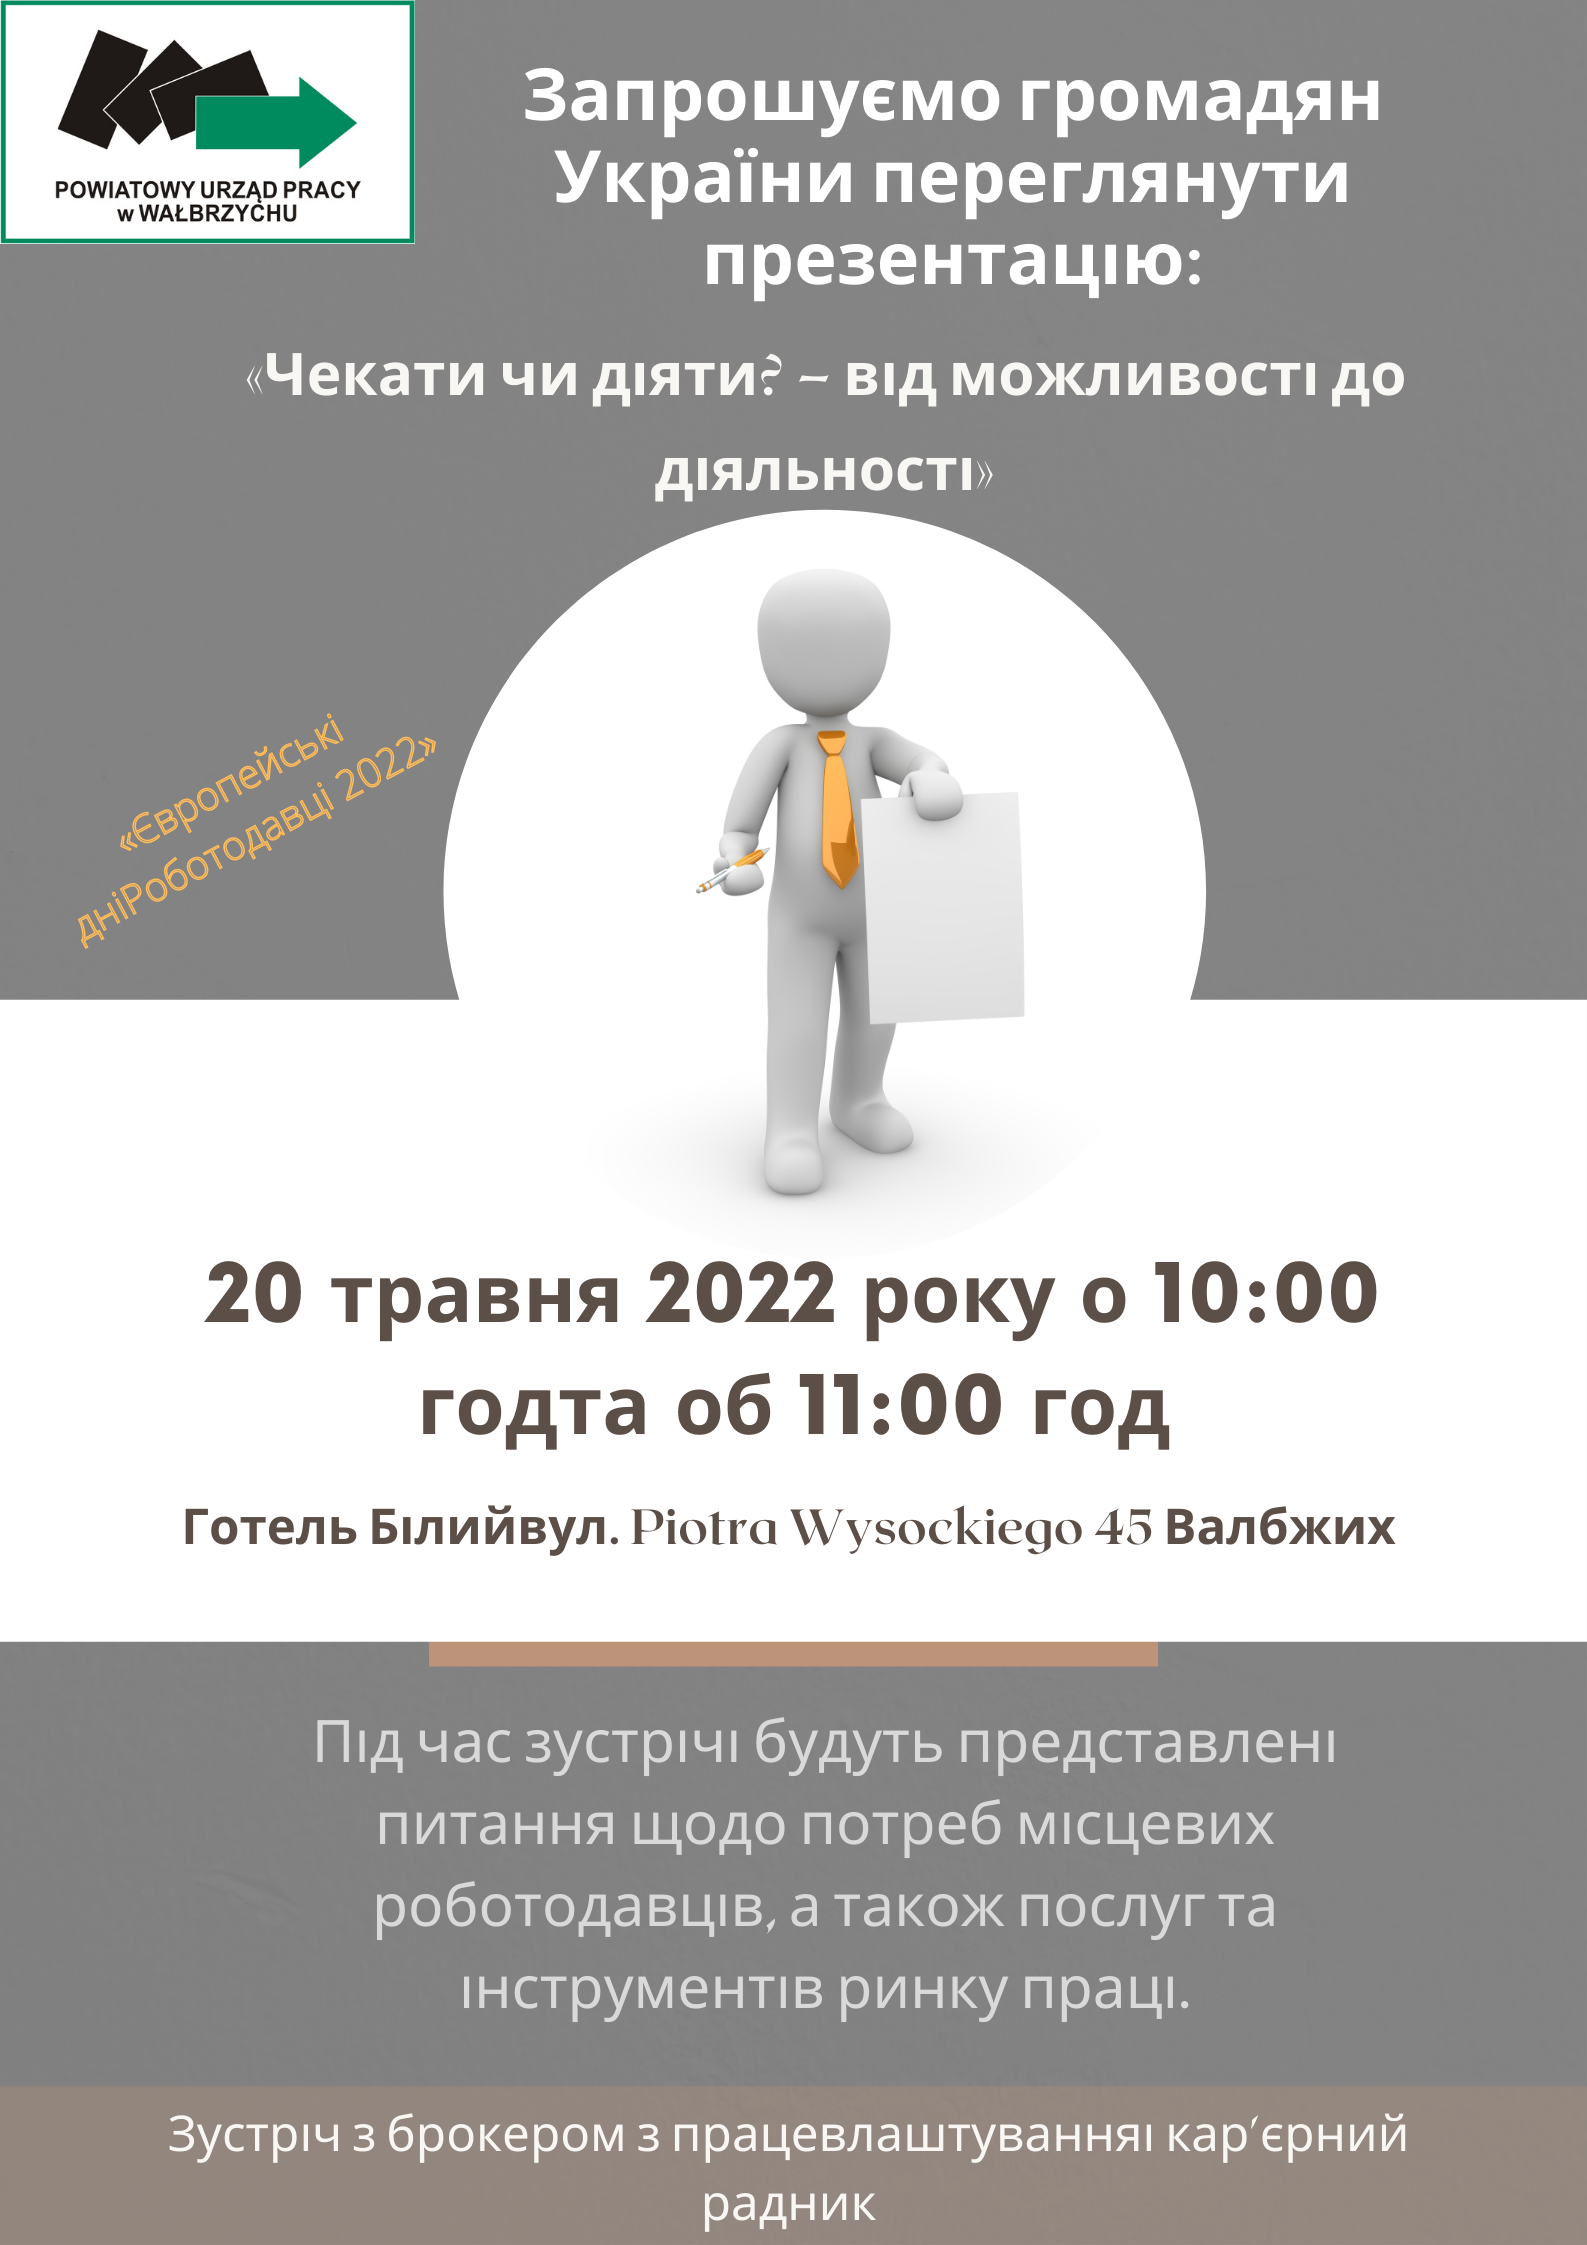 Zaproszenie na spotkanie dla Obywateli Ukrainy, prezentacja Czekać czy działać - od możliwości do aktywności (po ukraińsku)